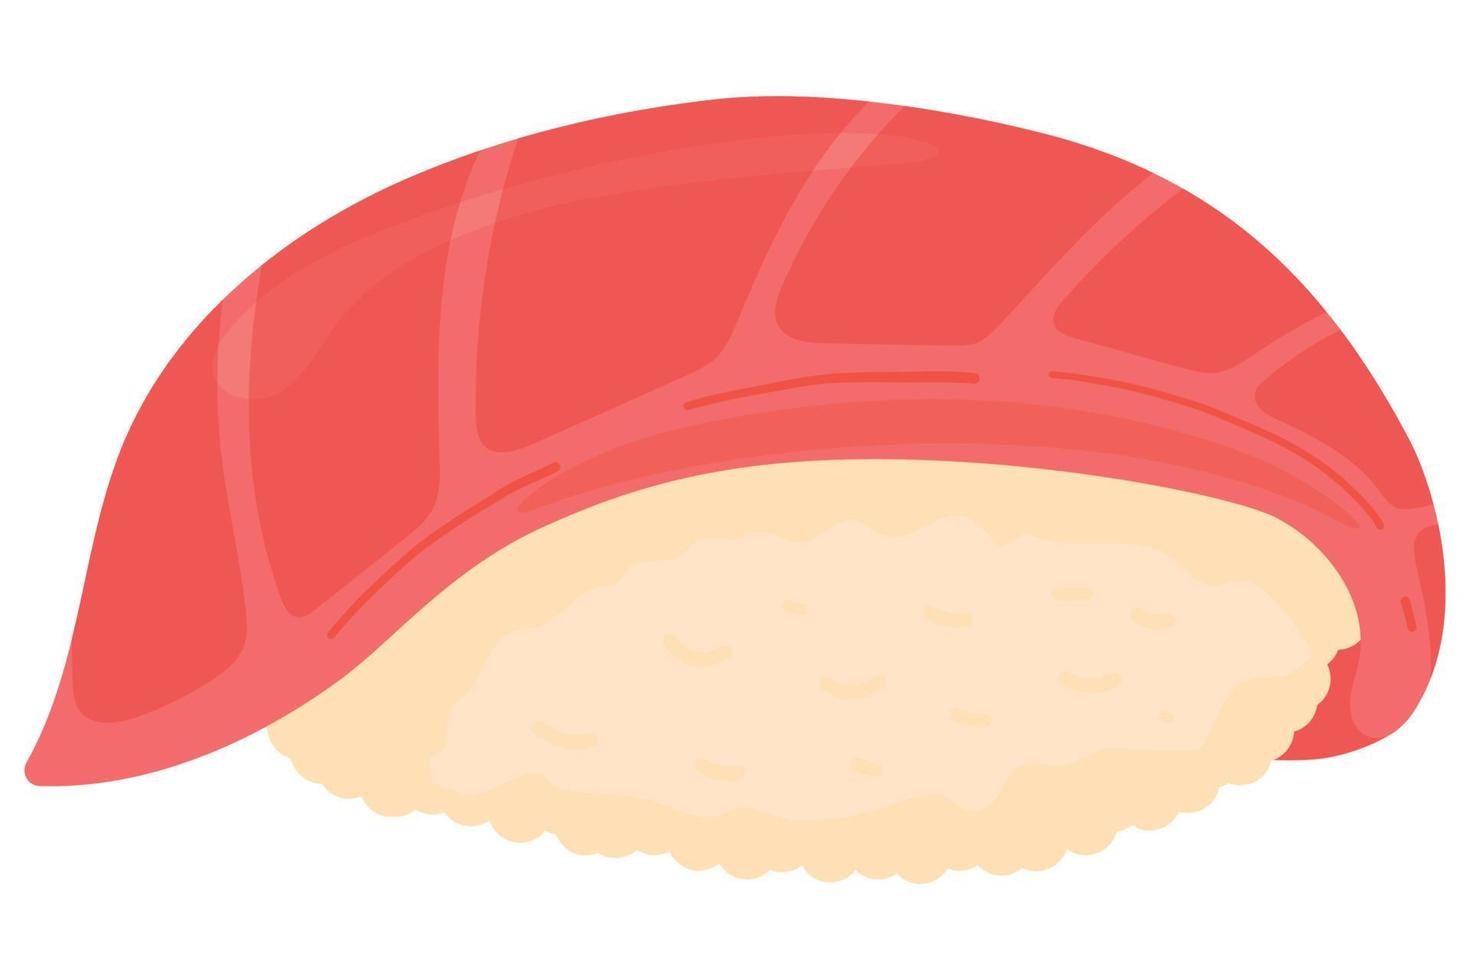 Cartoon-Thunfisch-Sushi. japanische küche, traditionelle lebensmittelikone lokalisiert auf weißem hintergrund vektor